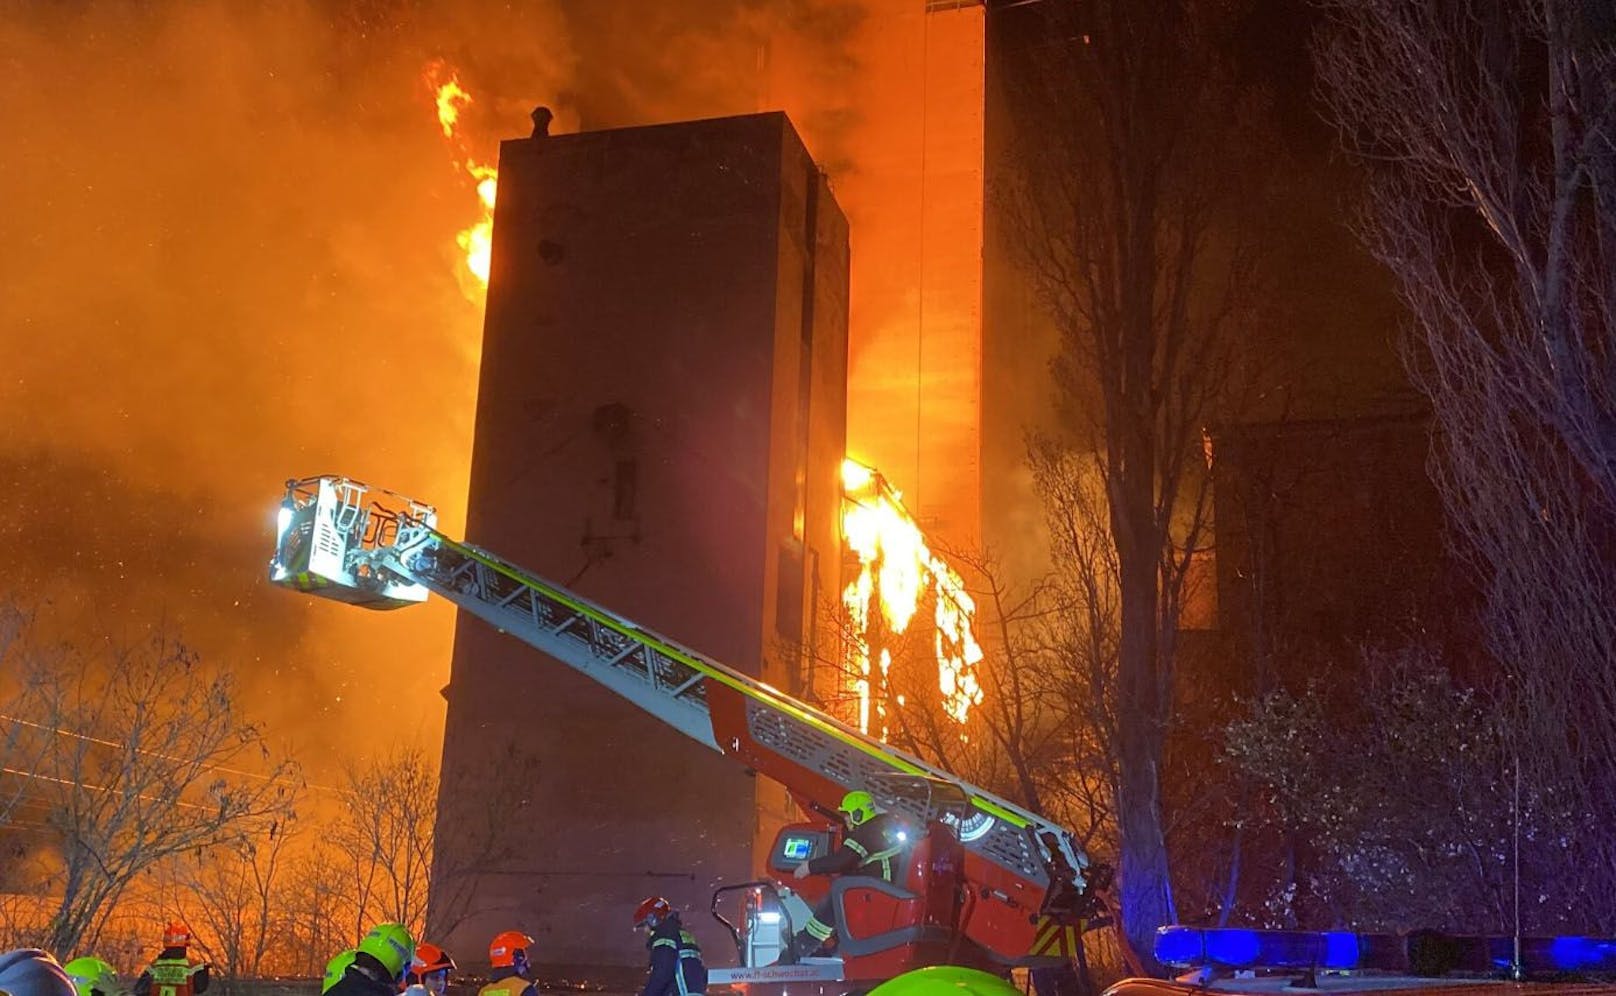 Der Brand eines leer stehenden Gebäudes in Schwechat an der Stadtgrenze zu Wien hat in der Nacht auf Sonntag einen Großeinsatz der Feuerwehr ausgelöst.